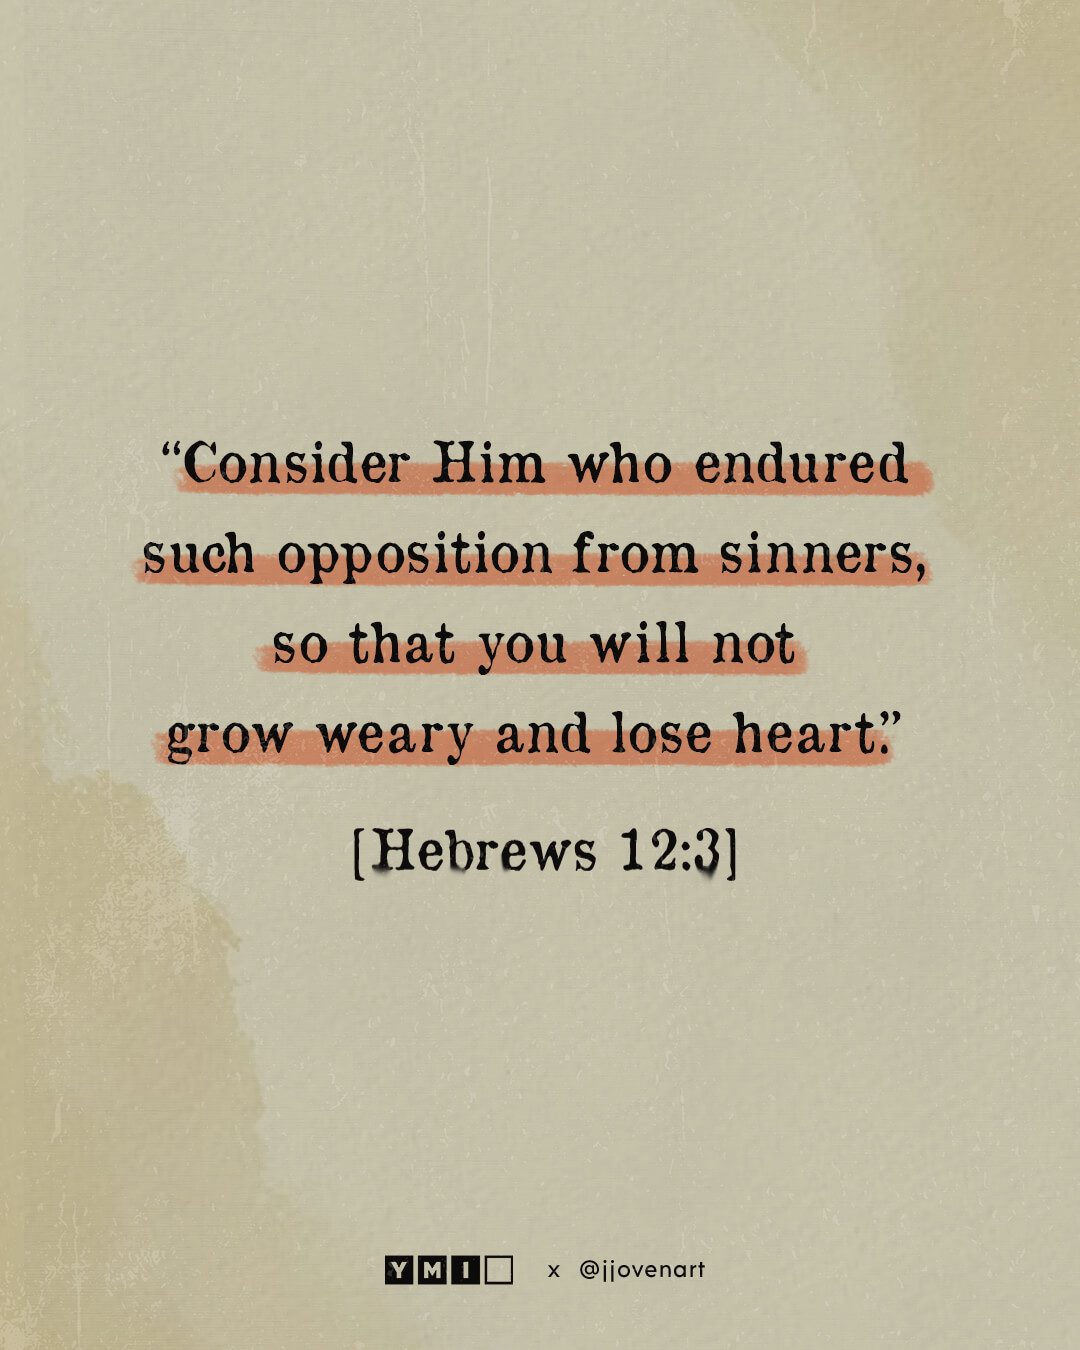 Hebrews 12:3 Text